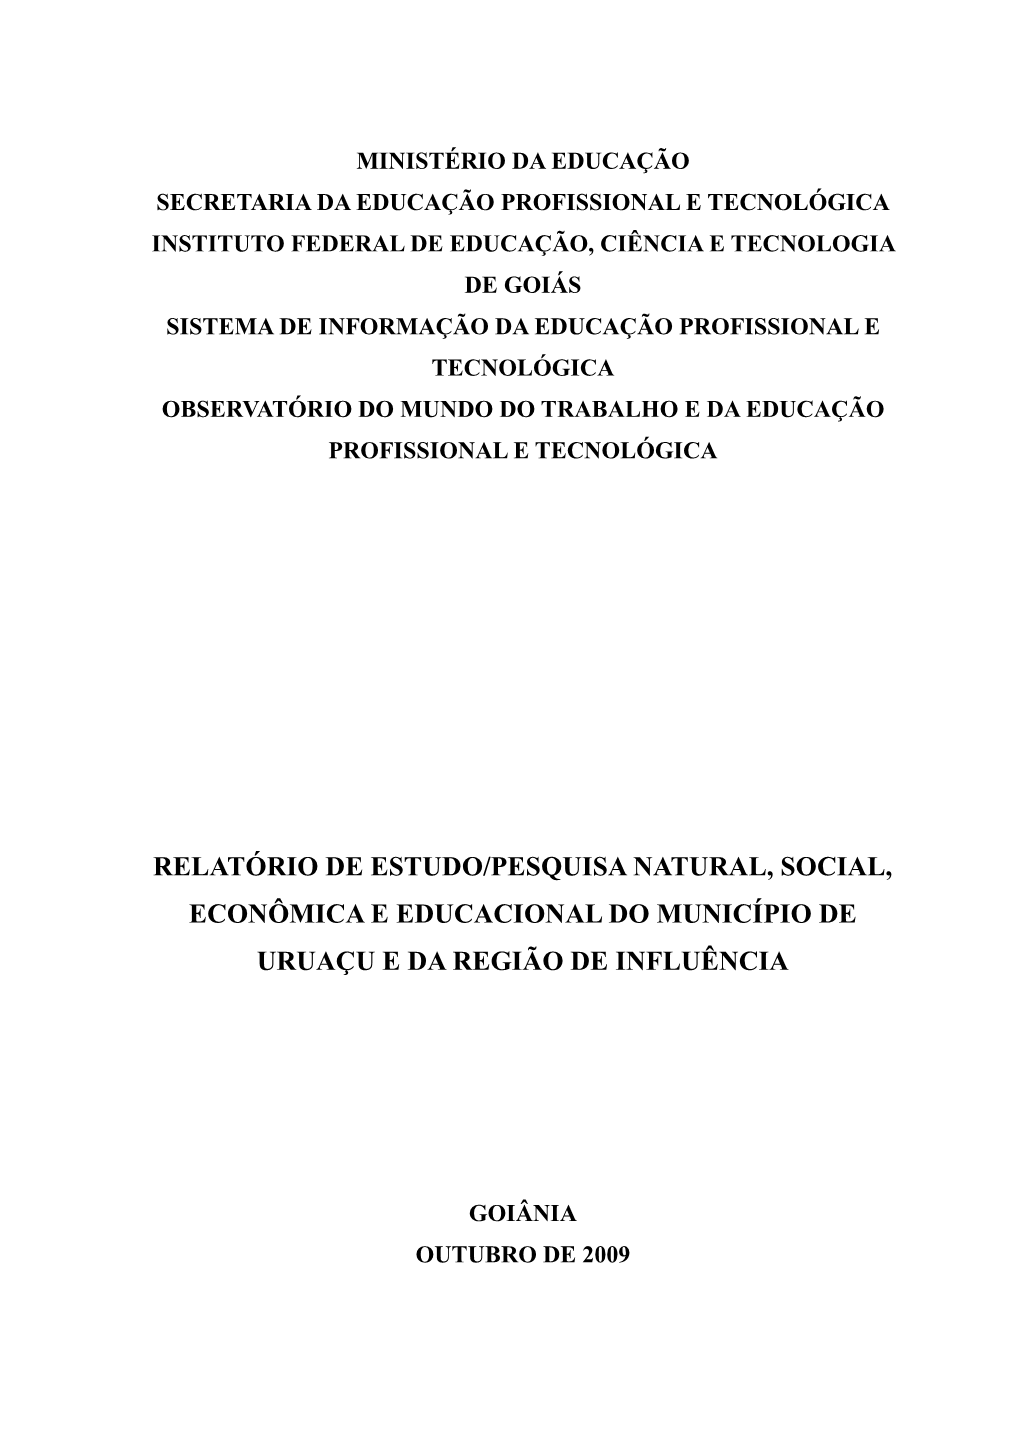 Relatório Final-Uruaçu